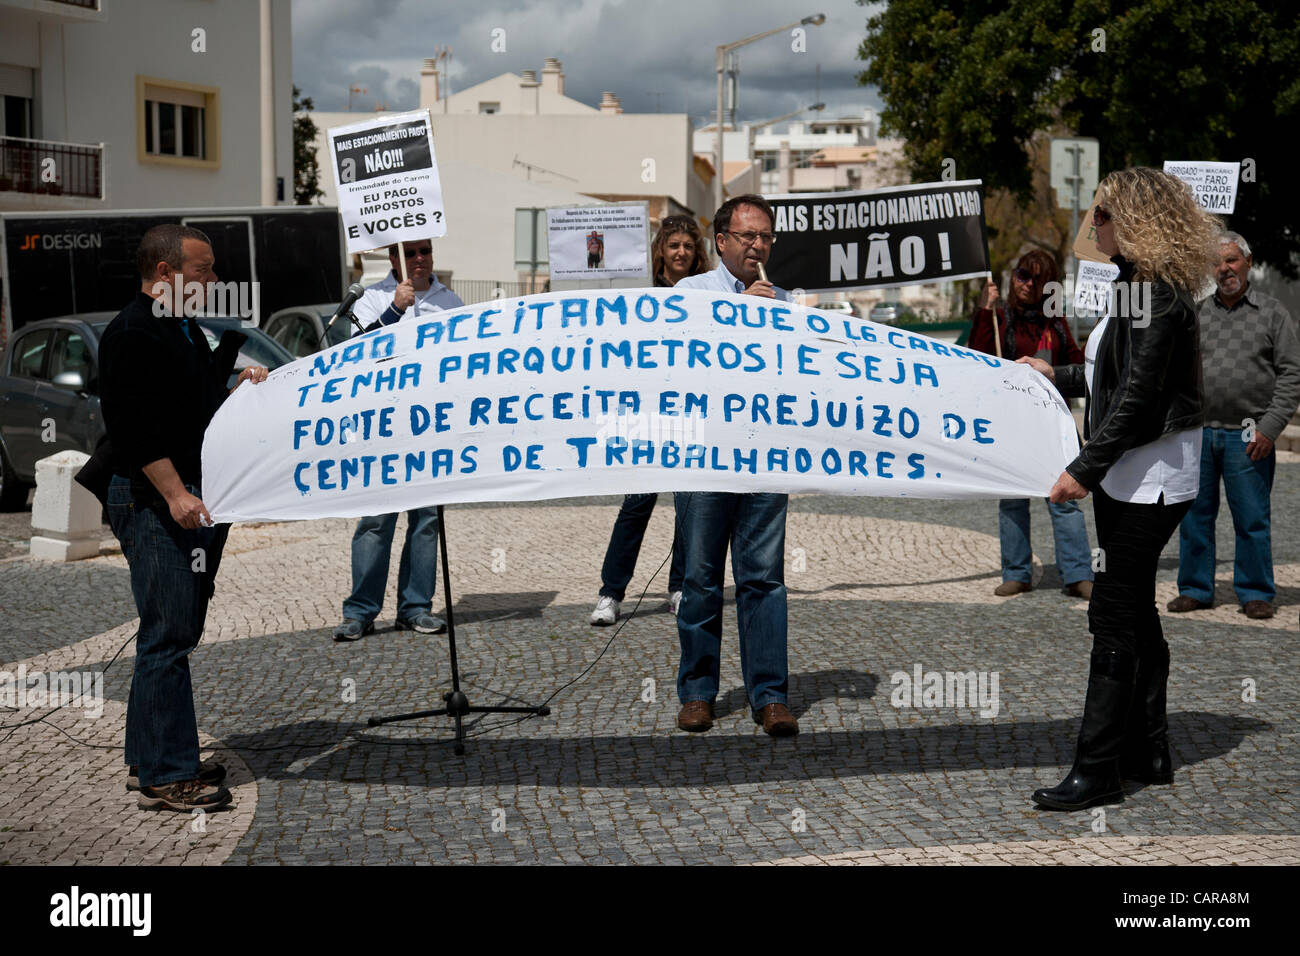 Protest gegen Parkgebühren verlangt von Büroangestellten durch die Carmo Kirche in Faro, Portugal. Donnerstag, 12. April 2012. Stockfoto